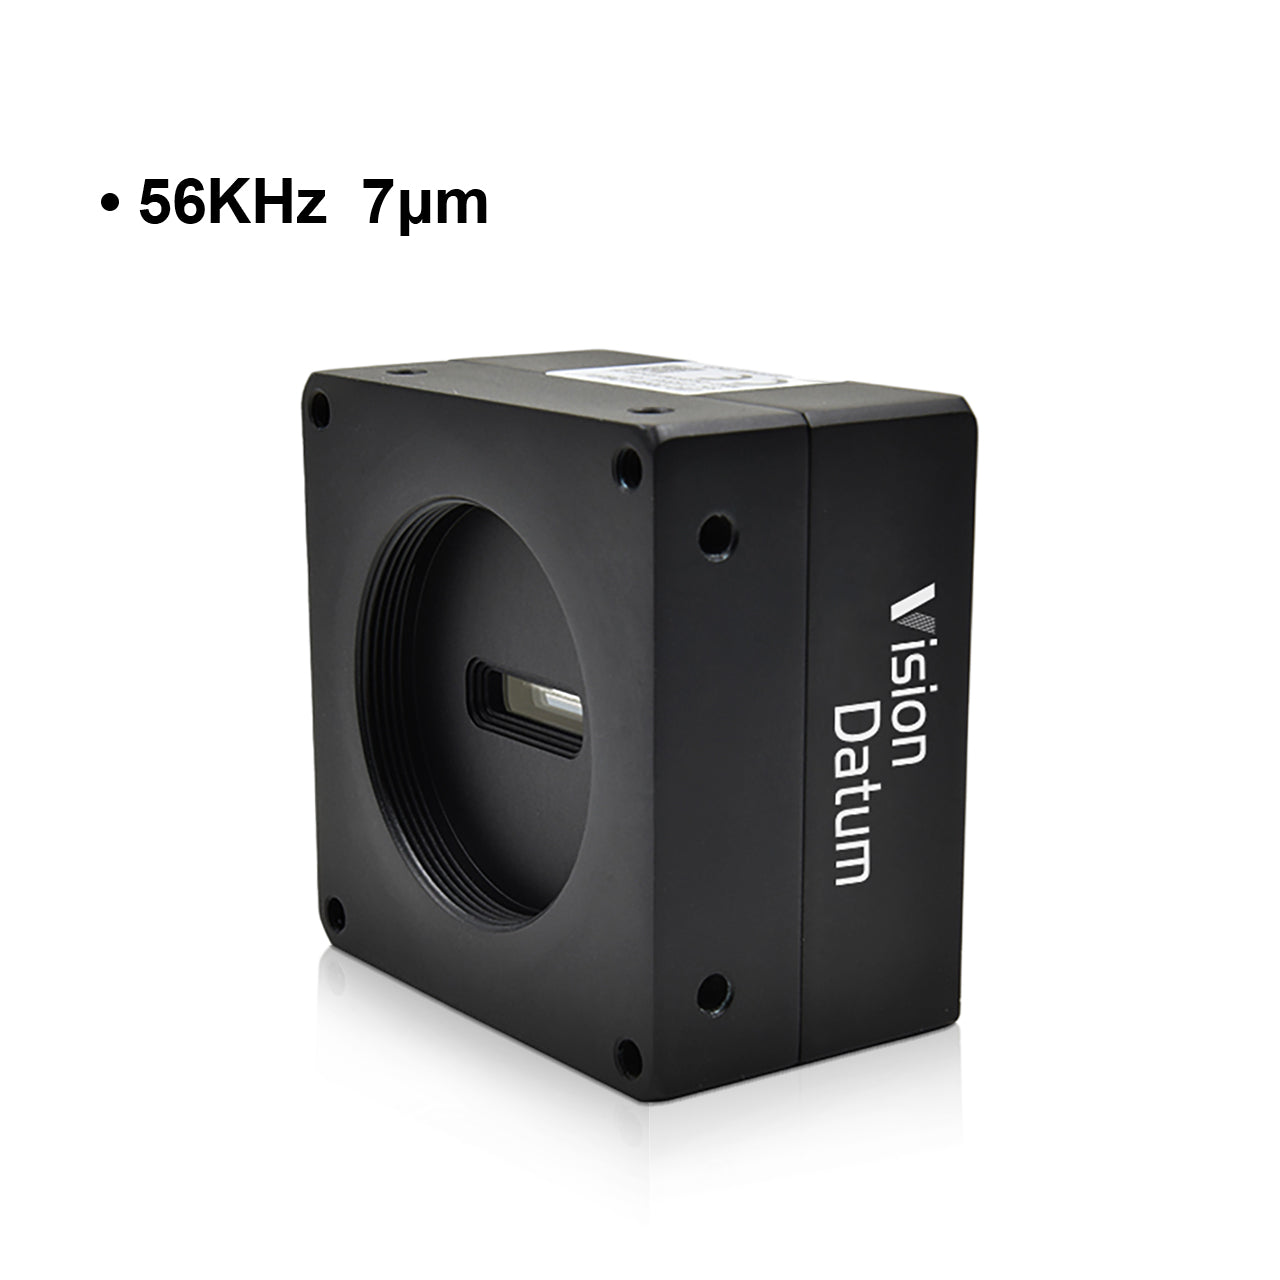 Камера линейного сканирования GigE с креплением C, 2K, 59 кГц, 7 мкм 